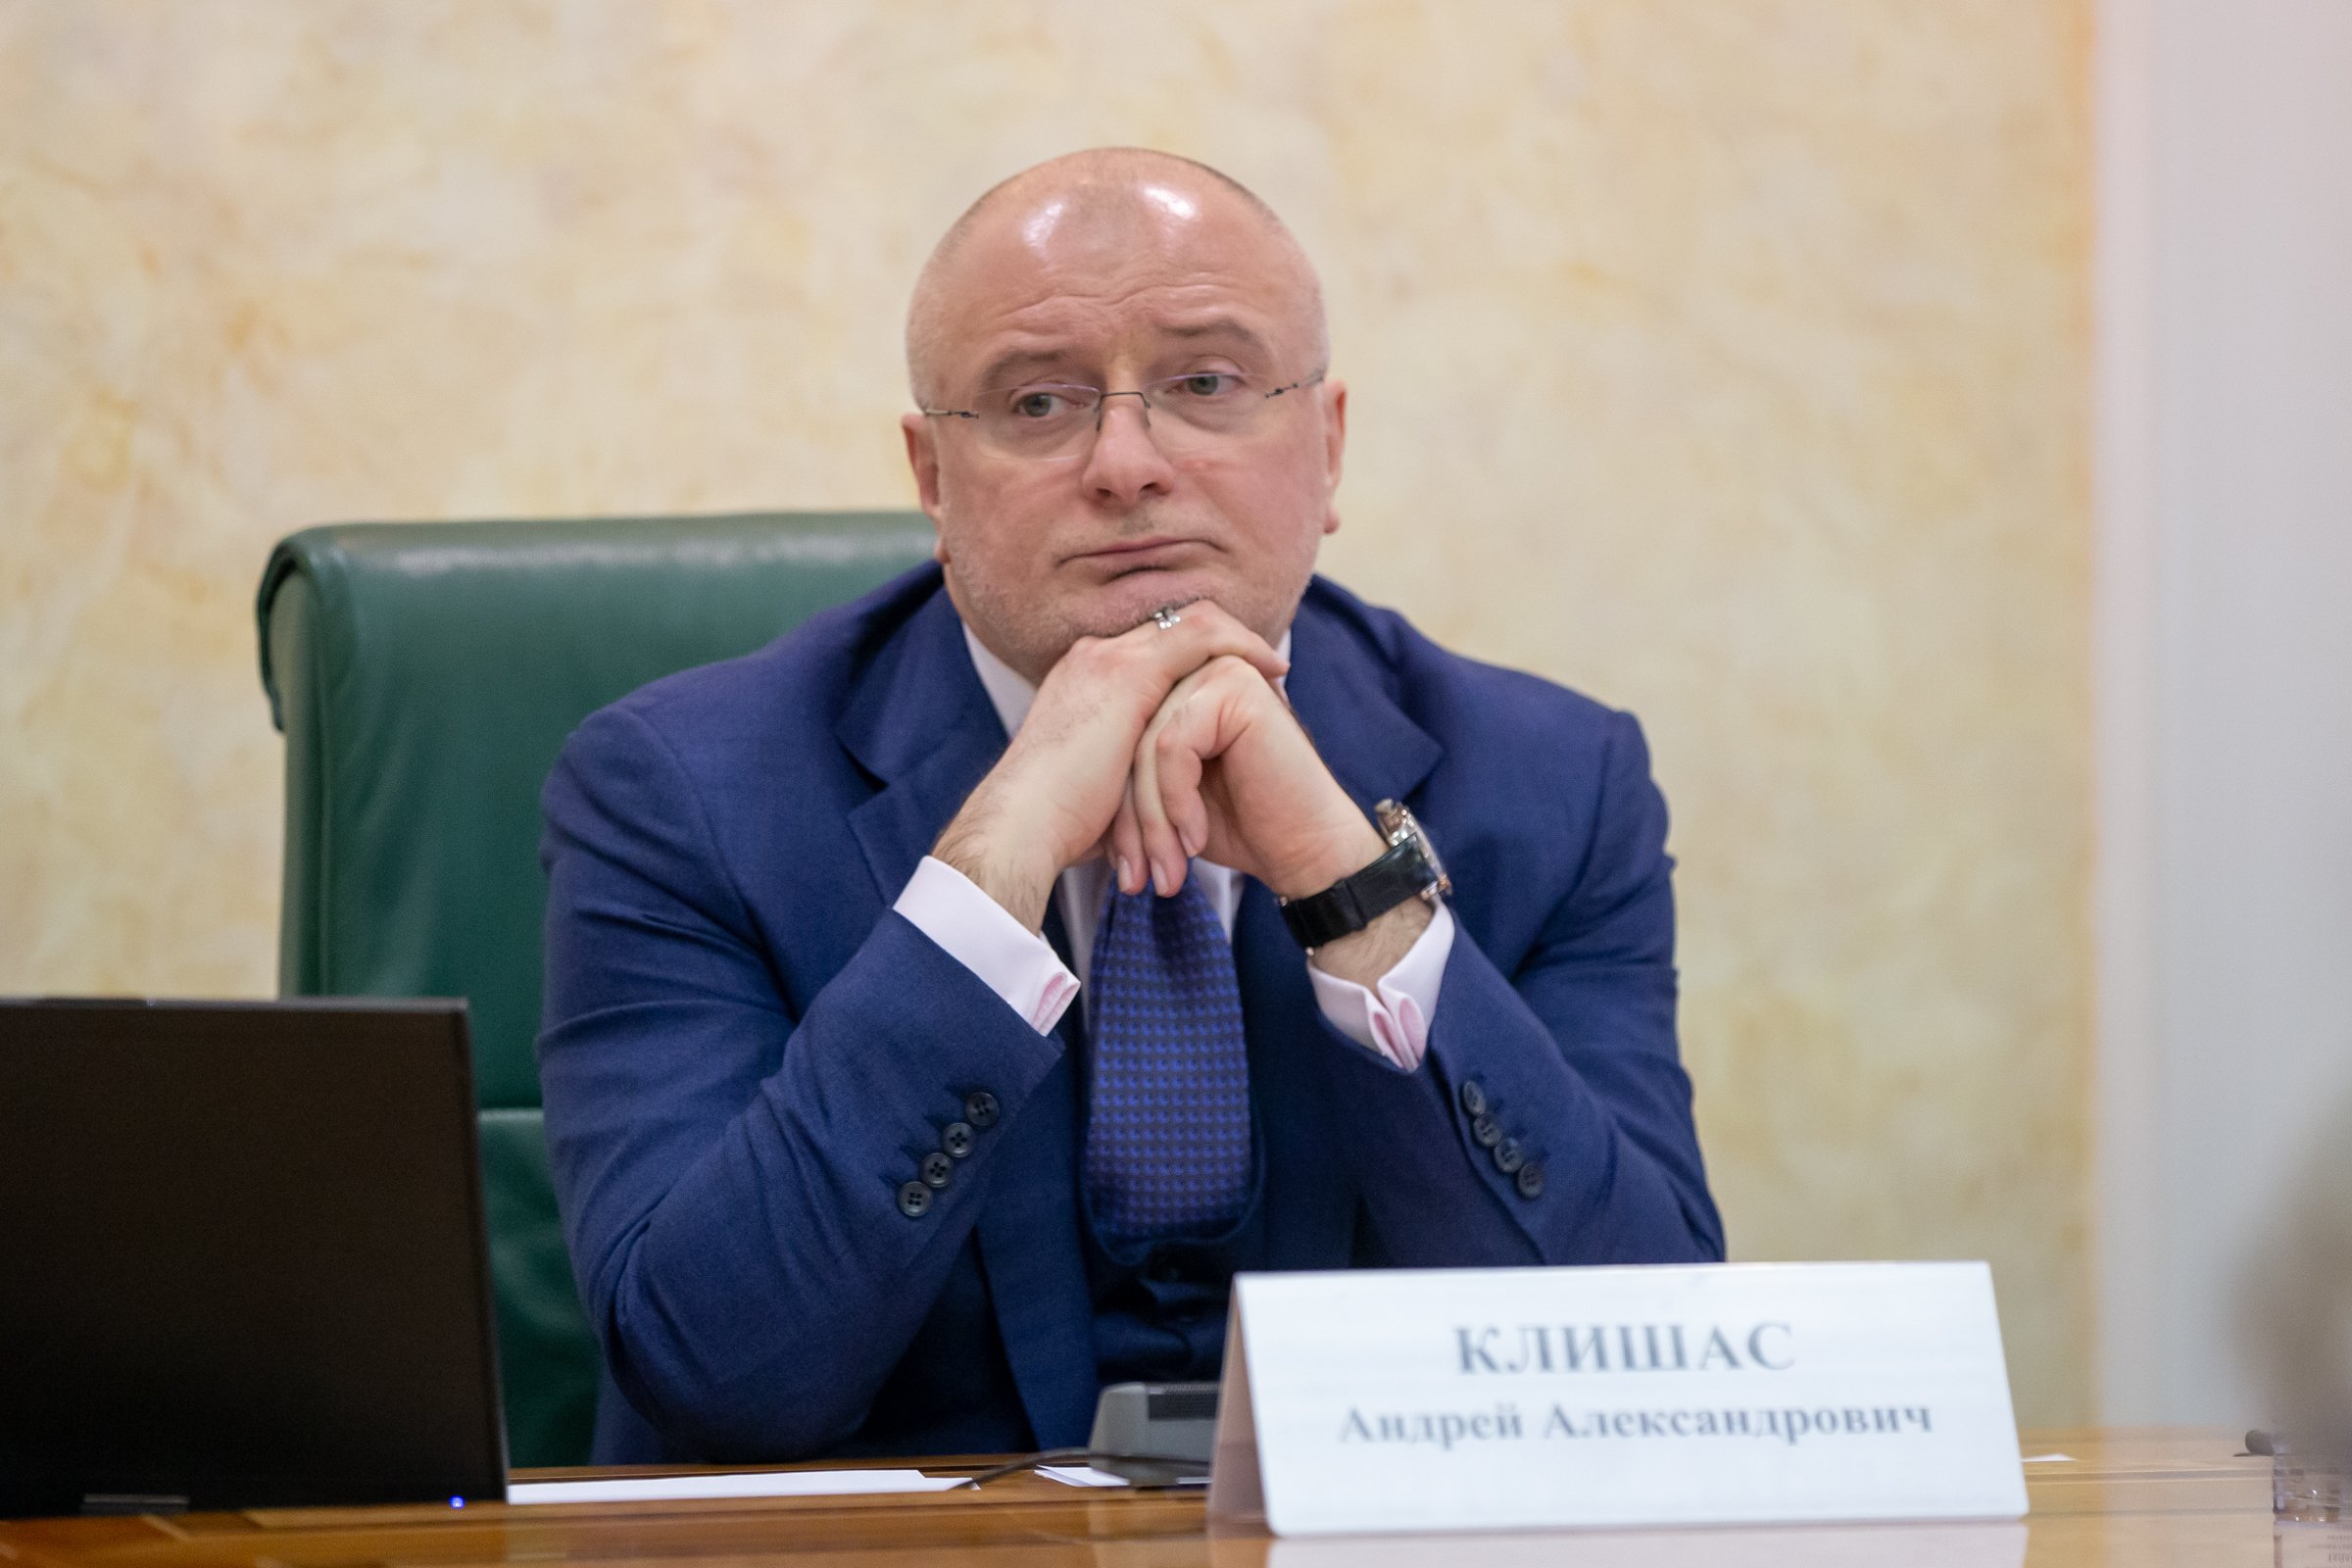 Пожизненный сенатор от Севастополя: какие перспективы